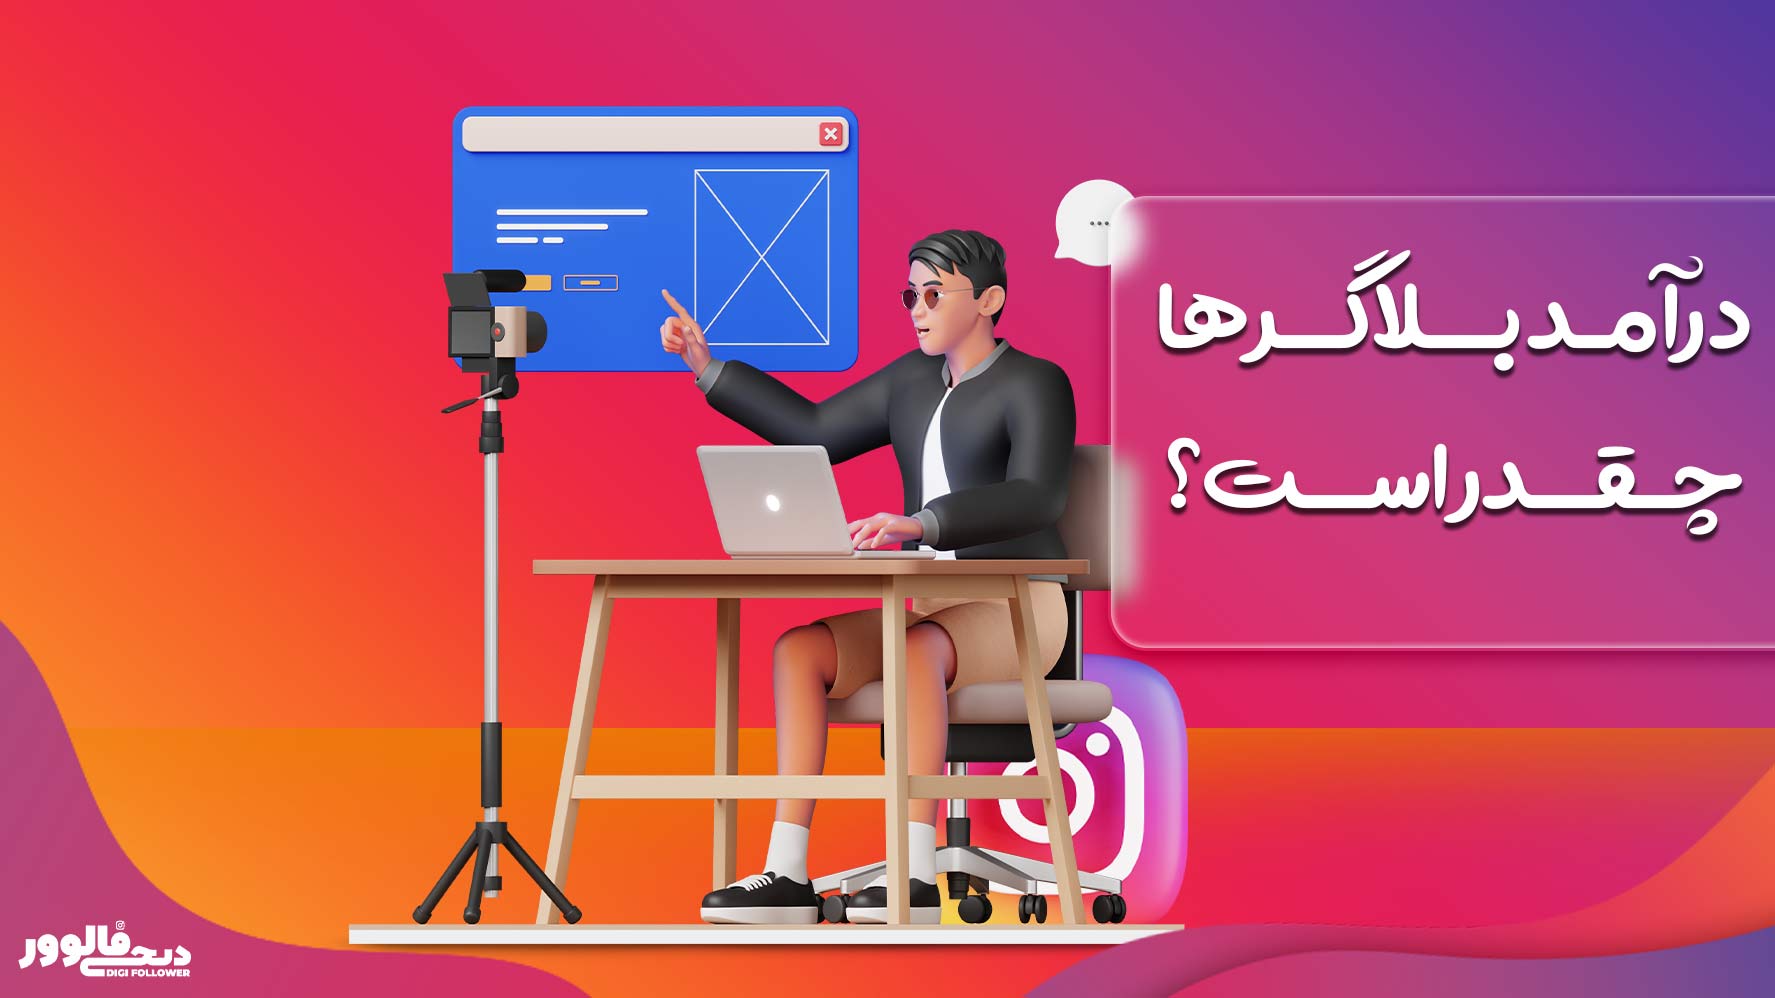 درآمد بلاگرها چقدر است؟ آمار دقیق درآمد بلاگرهای اینستاگرام در ایران